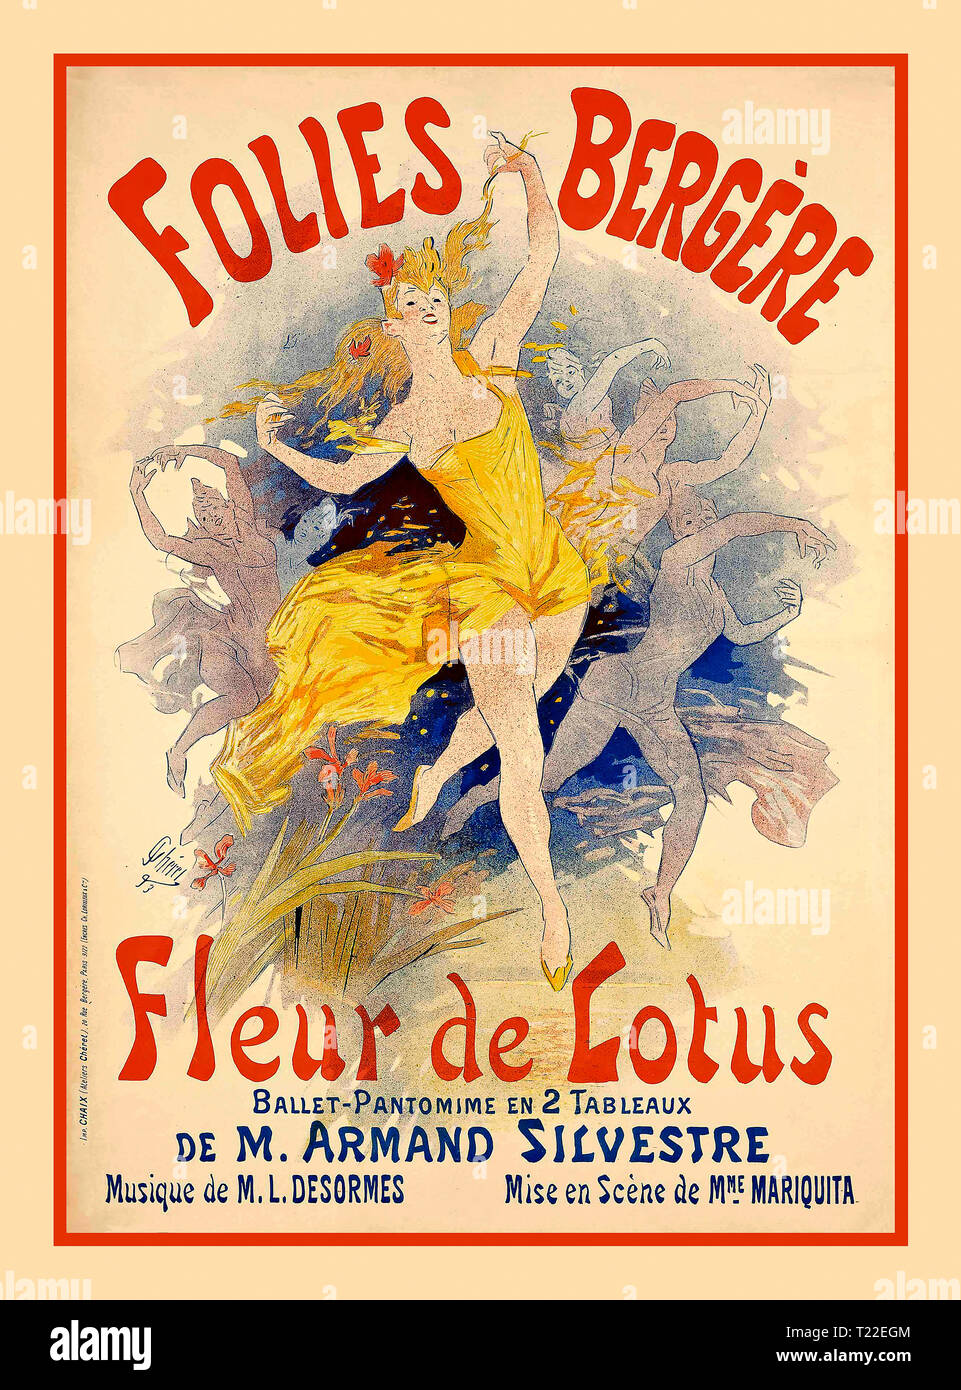 "Folies Bergère", poster di intrattenimento di Parigi del 1890 "Folies Bergère", "Fleur de Lotus", poster in stile Art Nouveau del 1893 per il Ballet Pantomime de M.Armand Silvestre Foto Stock